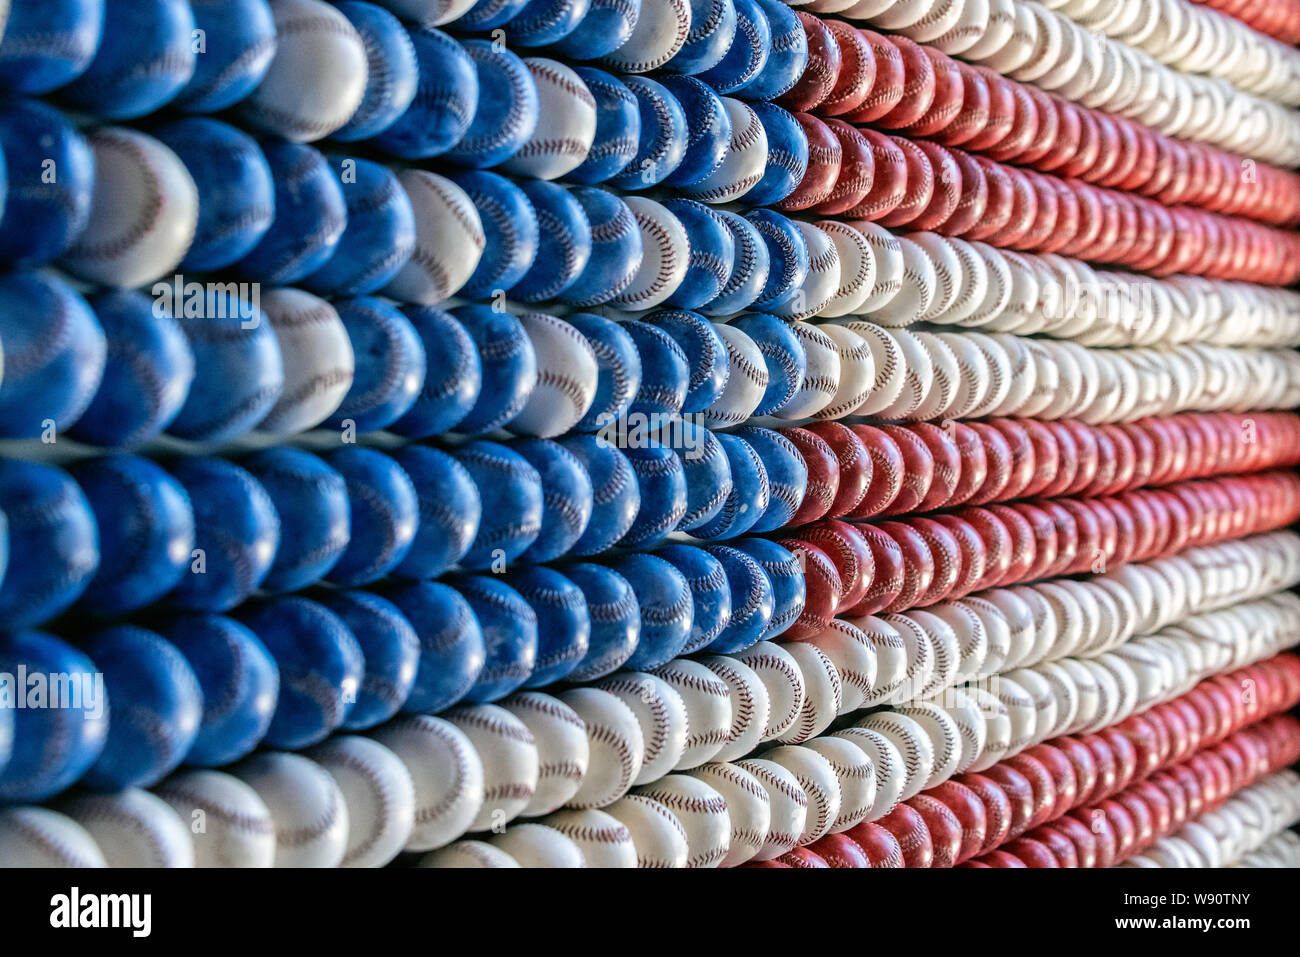 Scharfen Winkel anzeigen Nähte auf rot, weiß und blau gefärbten Baseballs an der Wand angeordnet, eine amerikanische Flagge zu bilden. Stockfoto